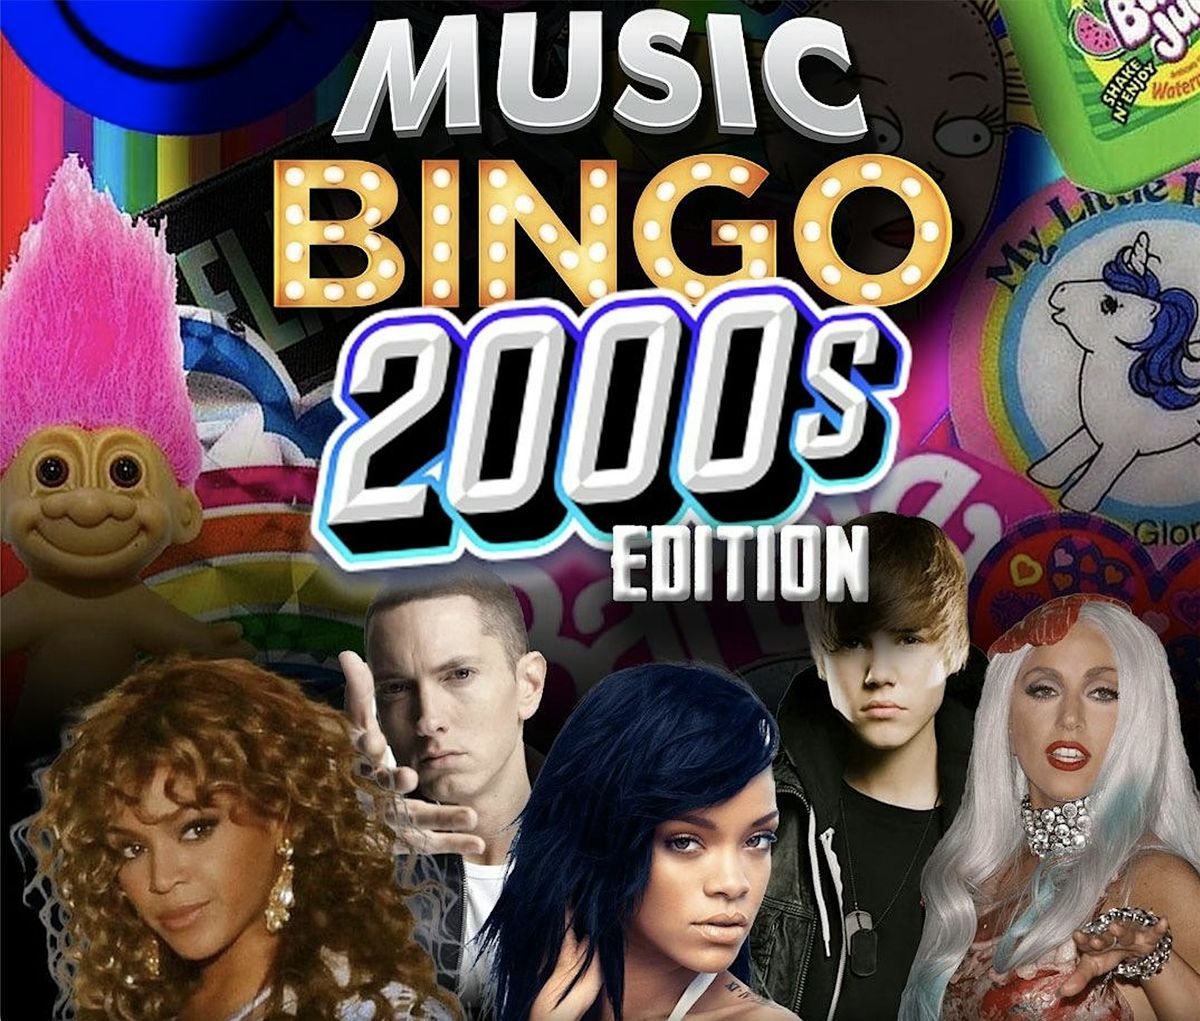 2000s Music Bingo & Pint Night at Railgarten